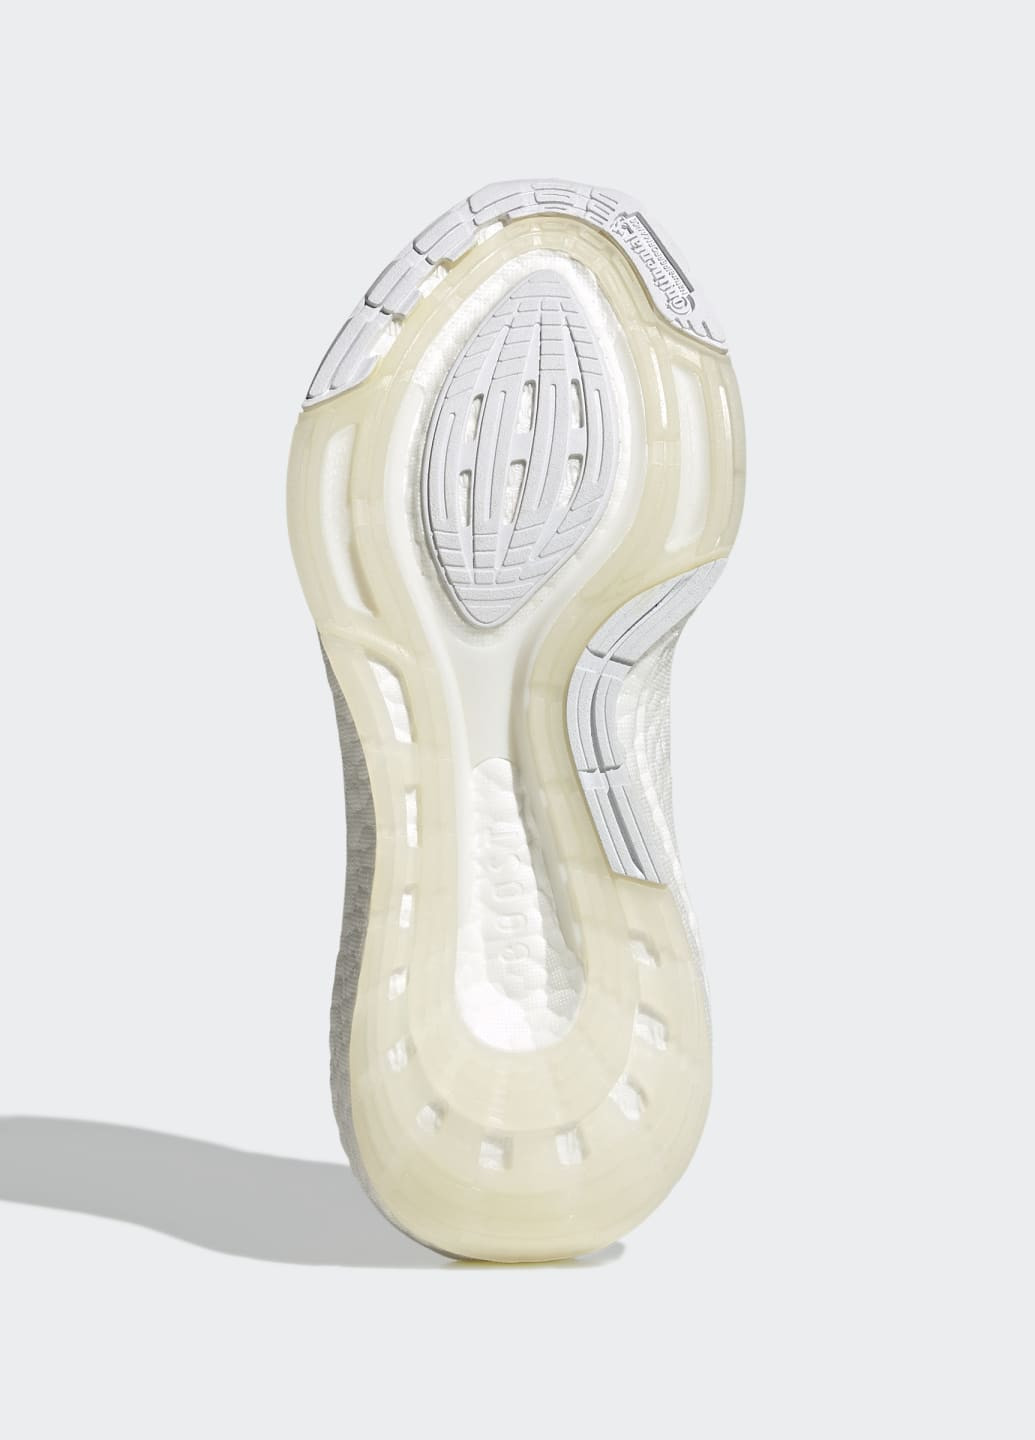 Білі всесезонні кросівки для бігу ultraboost 22 adidas